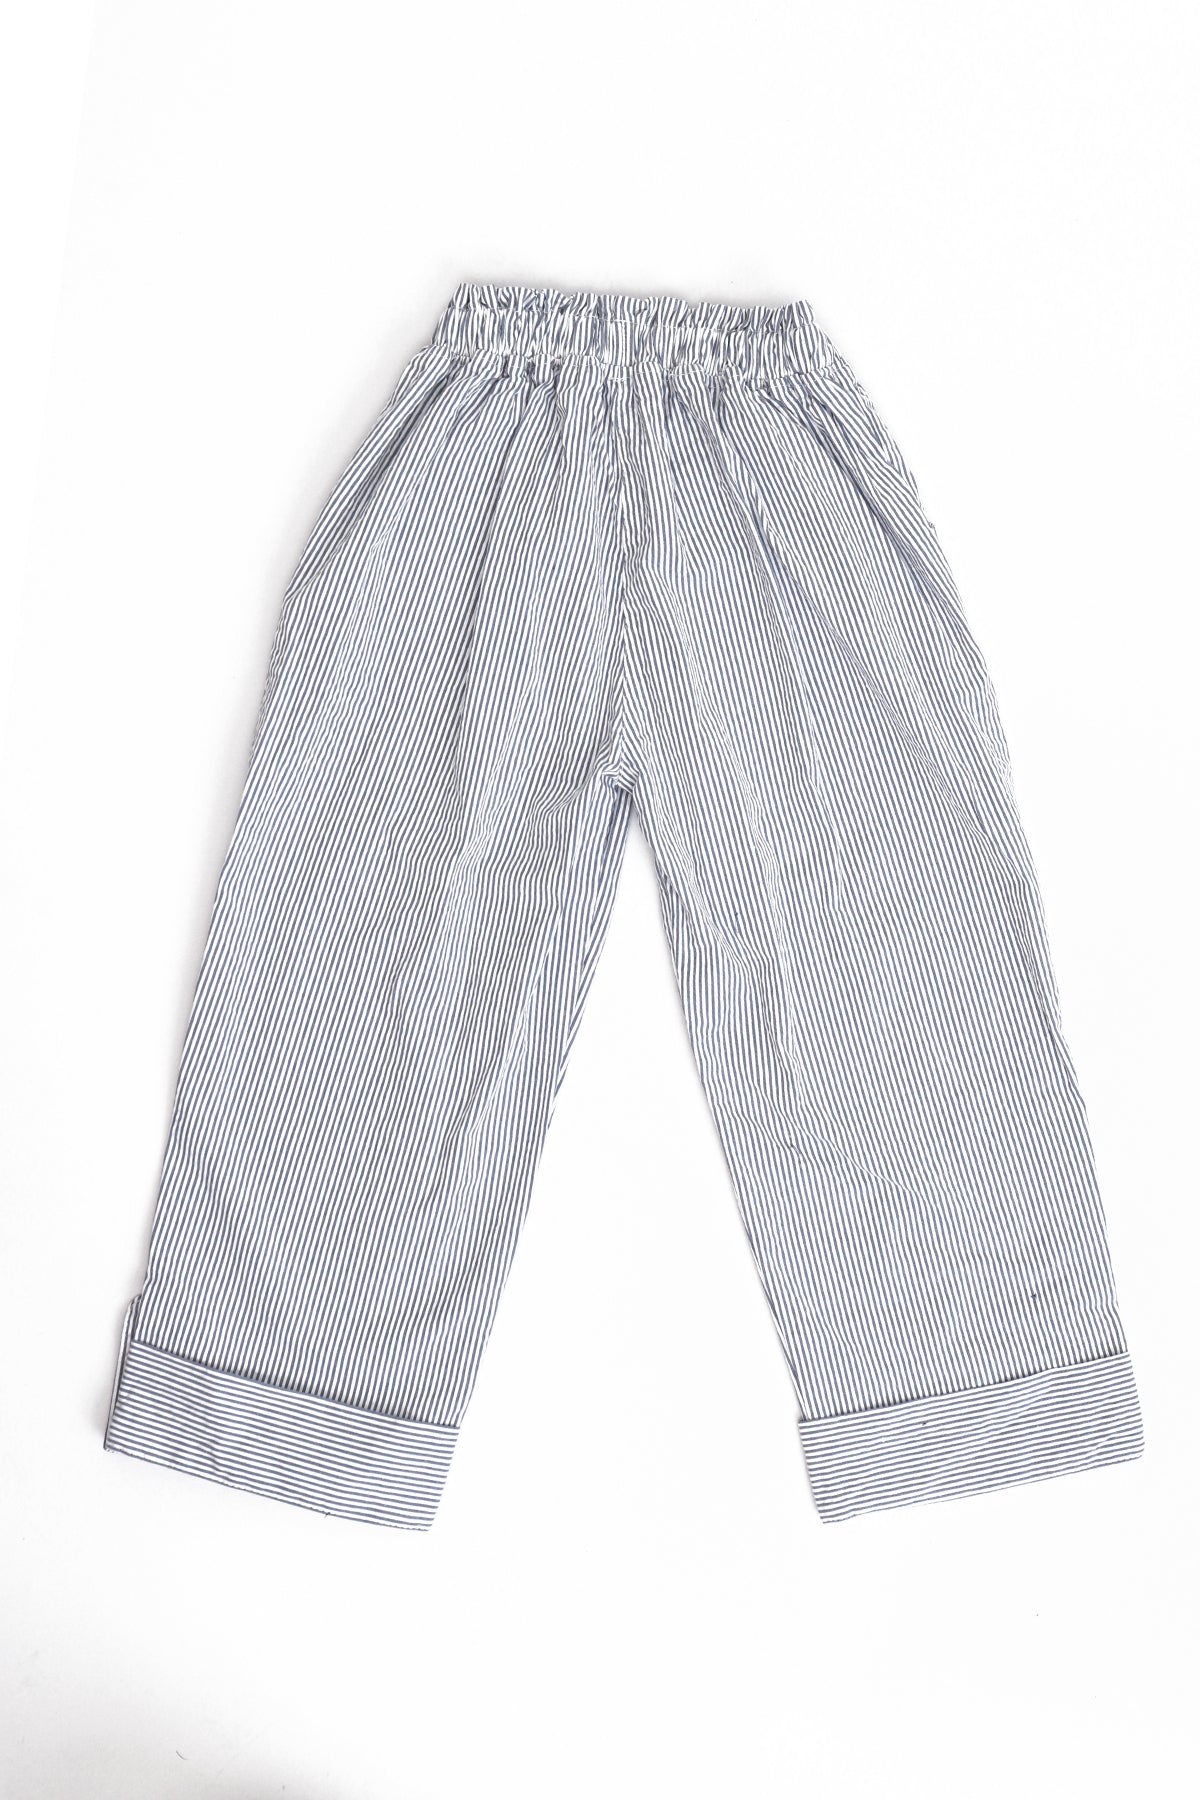 Tween Kids Girls 3/4 Sleeve Casual Pant